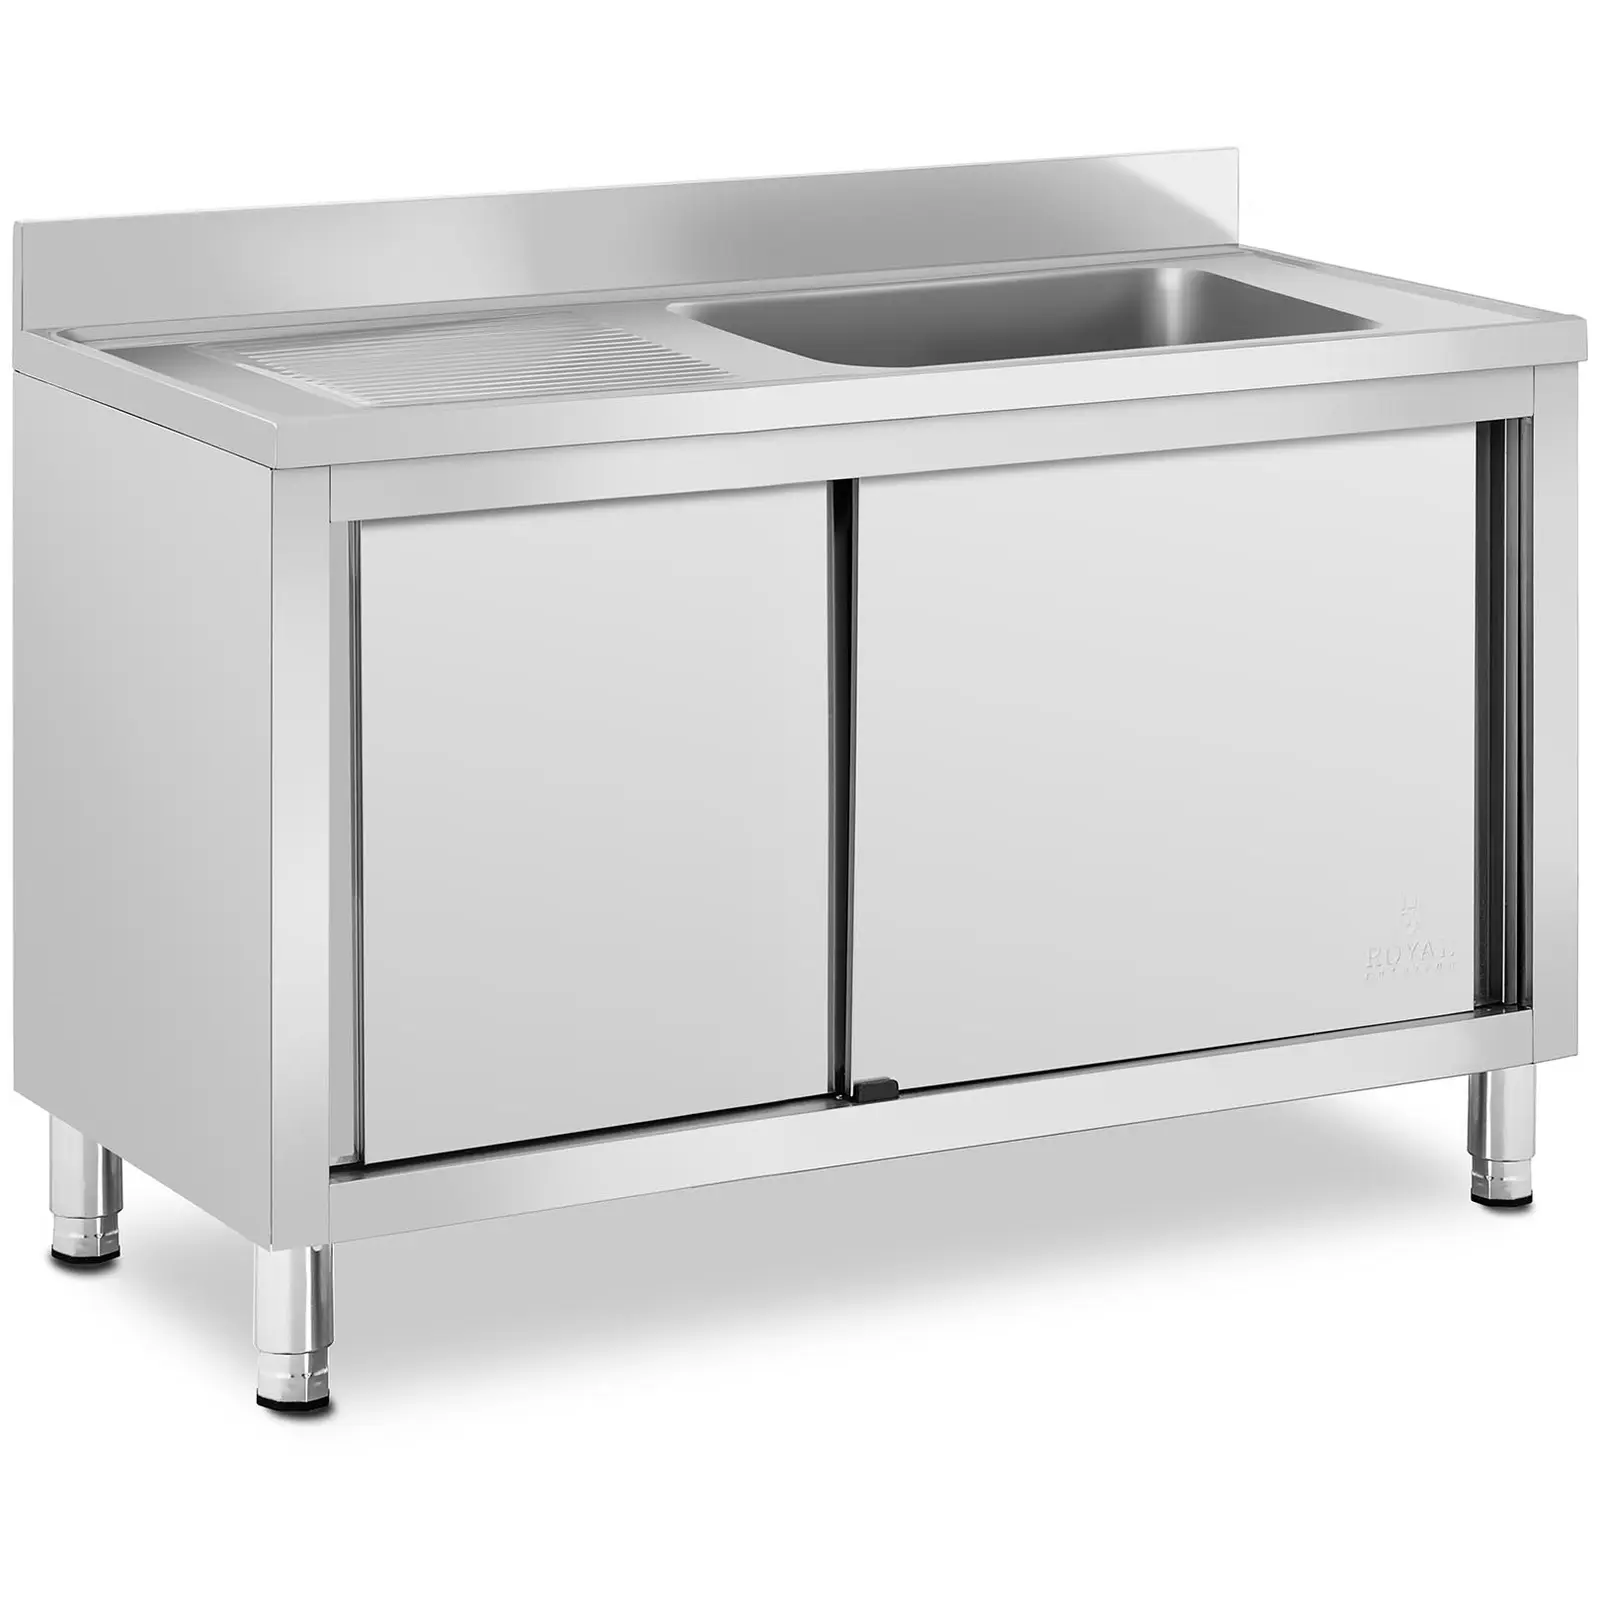 Търговска кухненска мивка - 1 мивка - Royal Catering -  - 500 x 400 x 260 mm